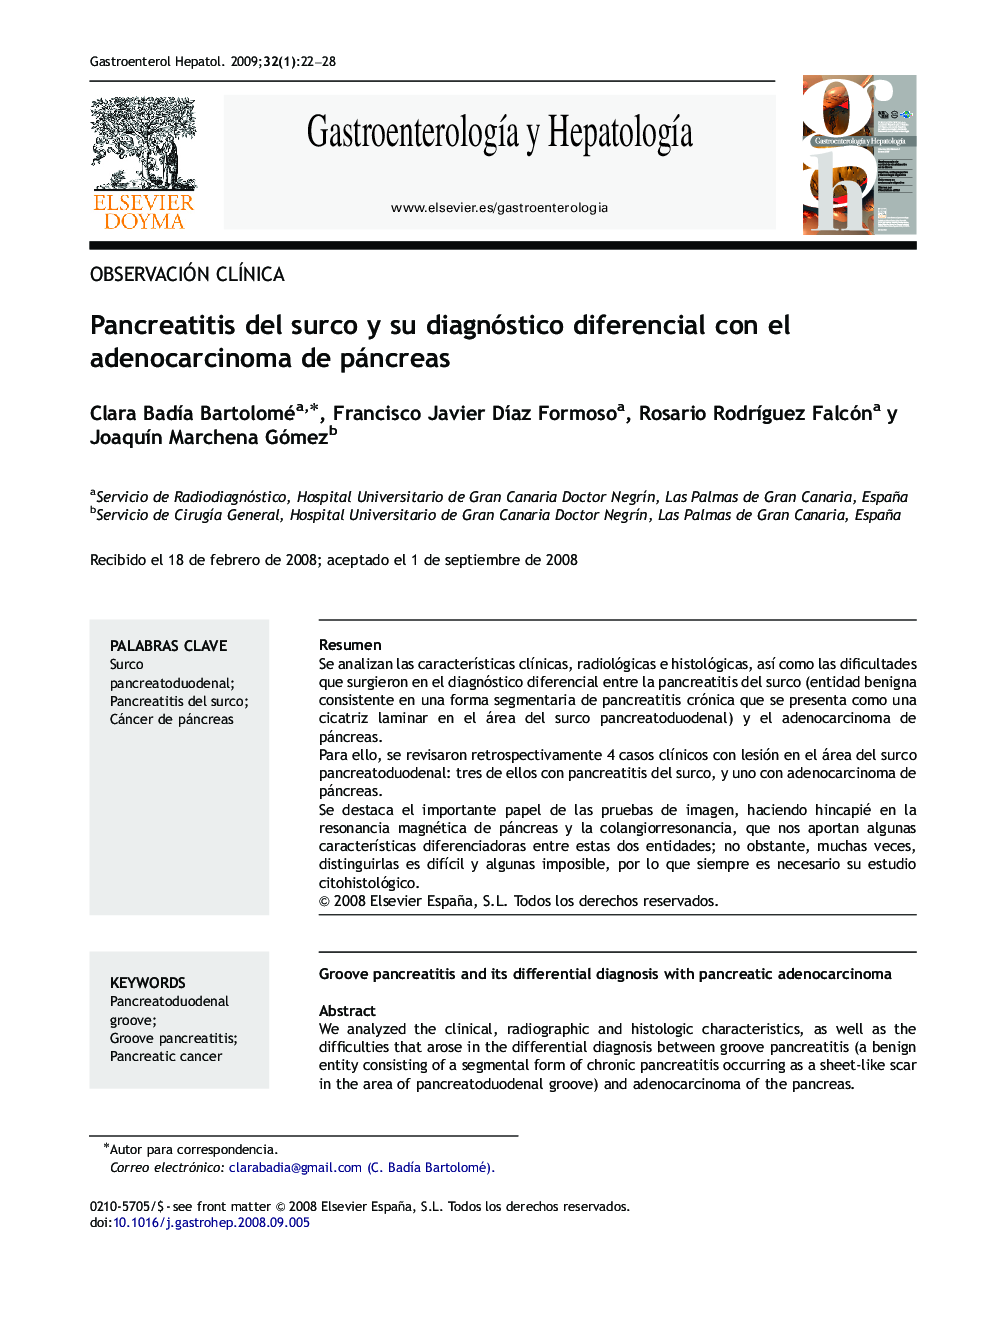 Pancreatitis del surco y su diagnóstico diferencial con el adenocarcinoma de páncreas